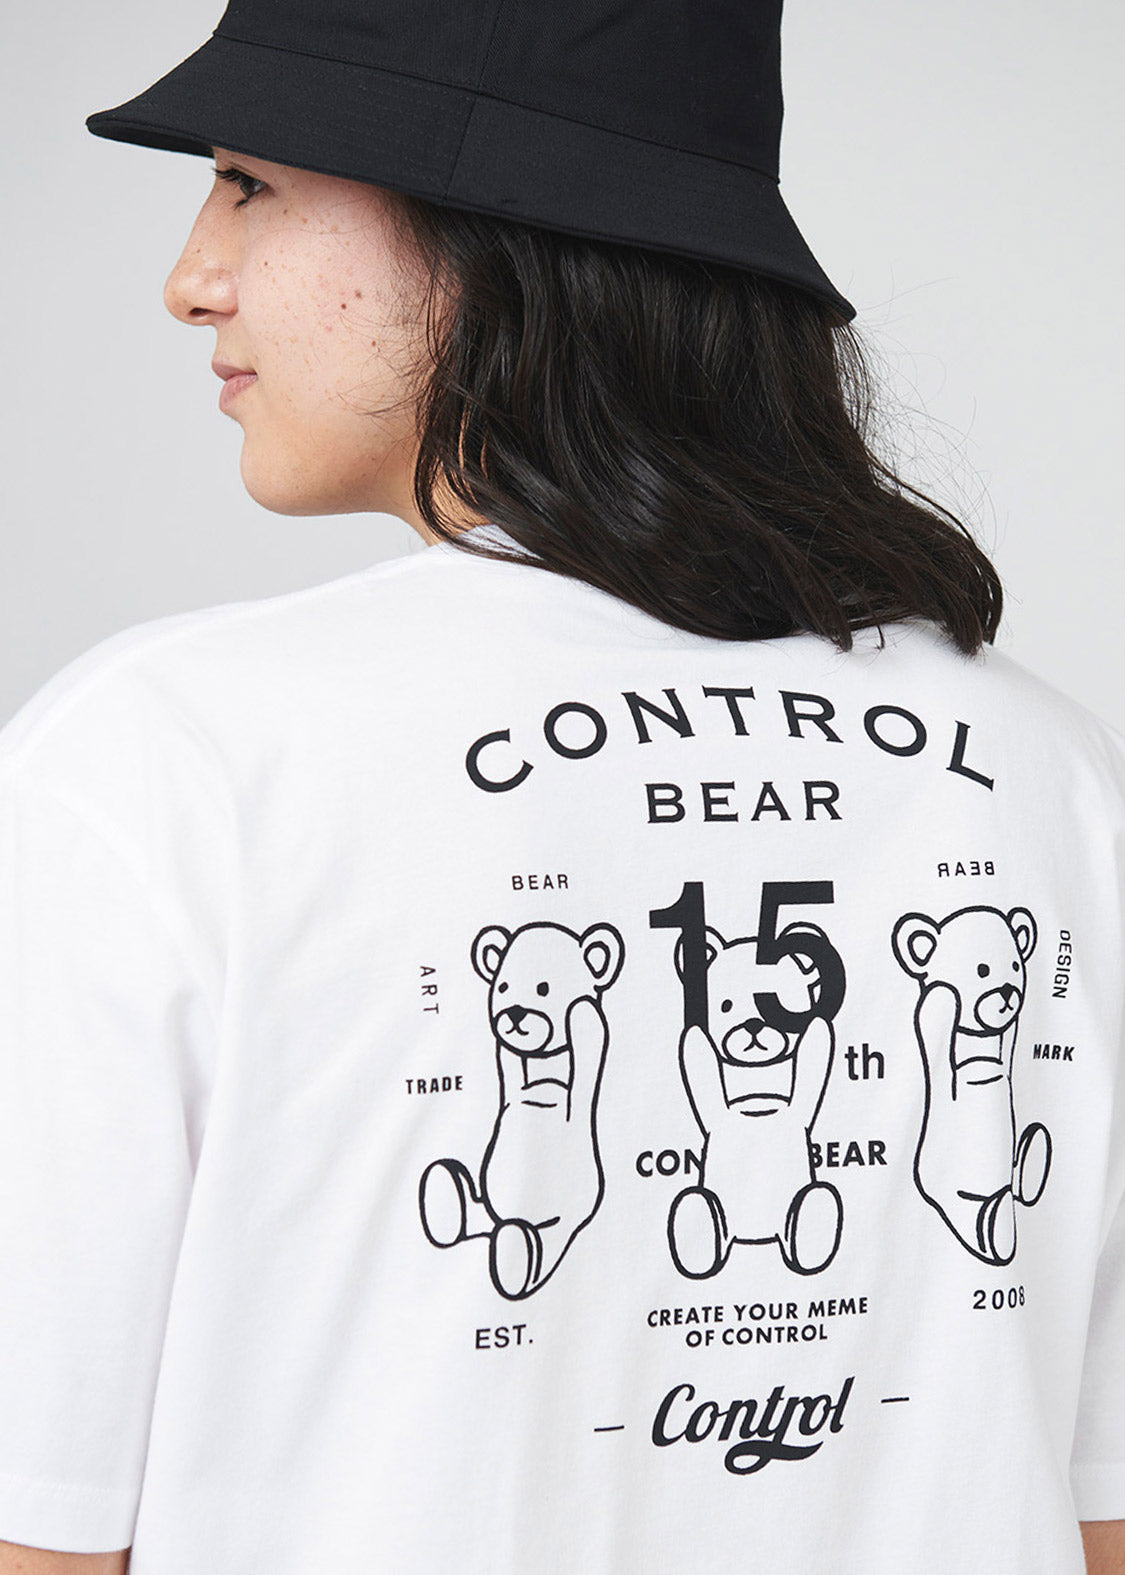 Control Bear 15th Anniversary Tshirt